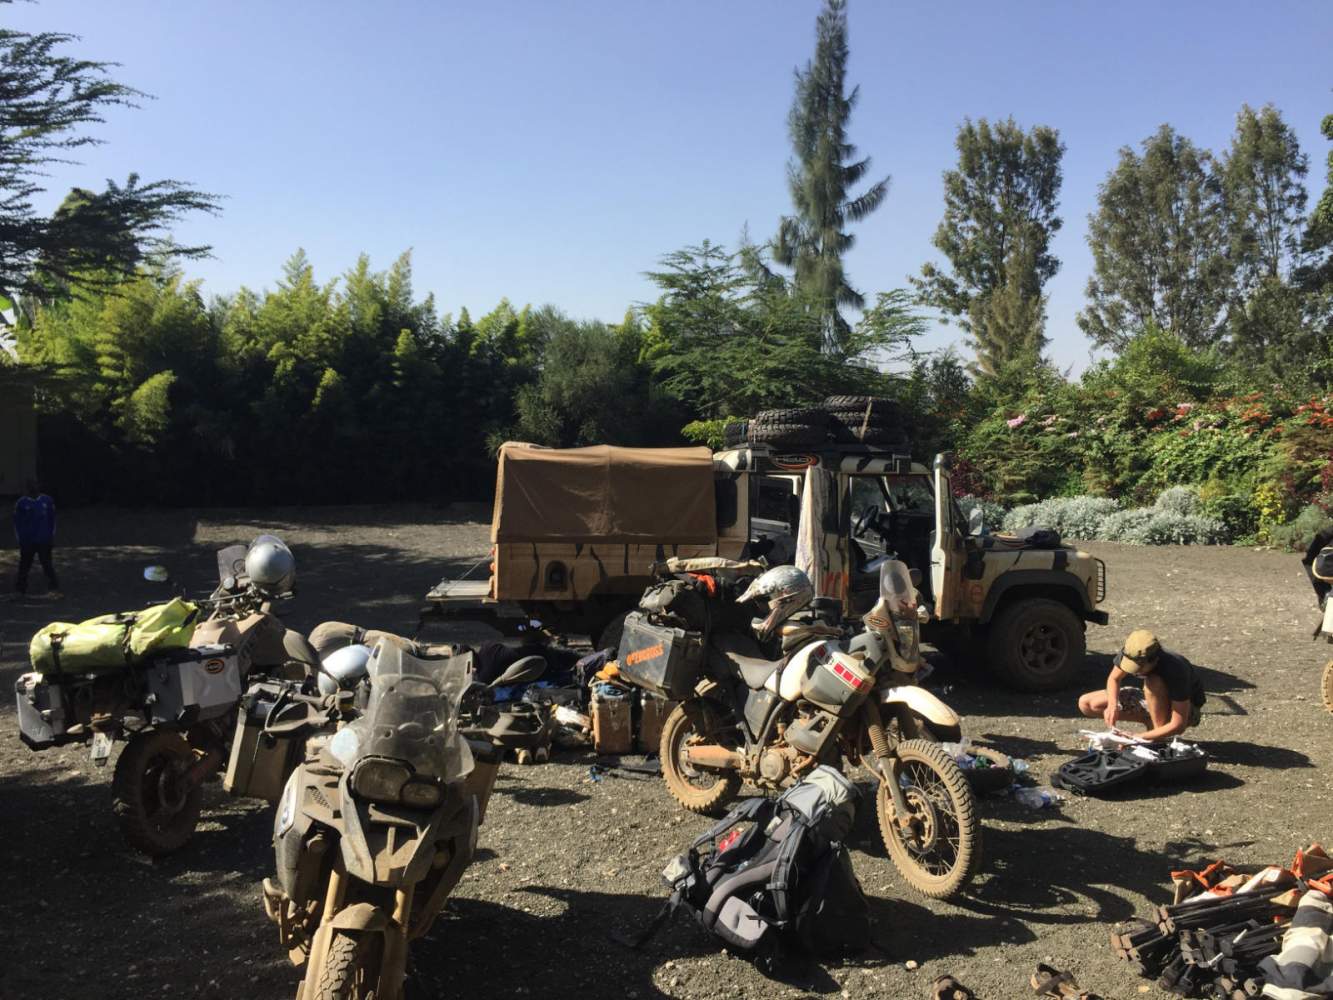 Ankunft im Camp - Motorräder und Geländewagen verursachen Chaos